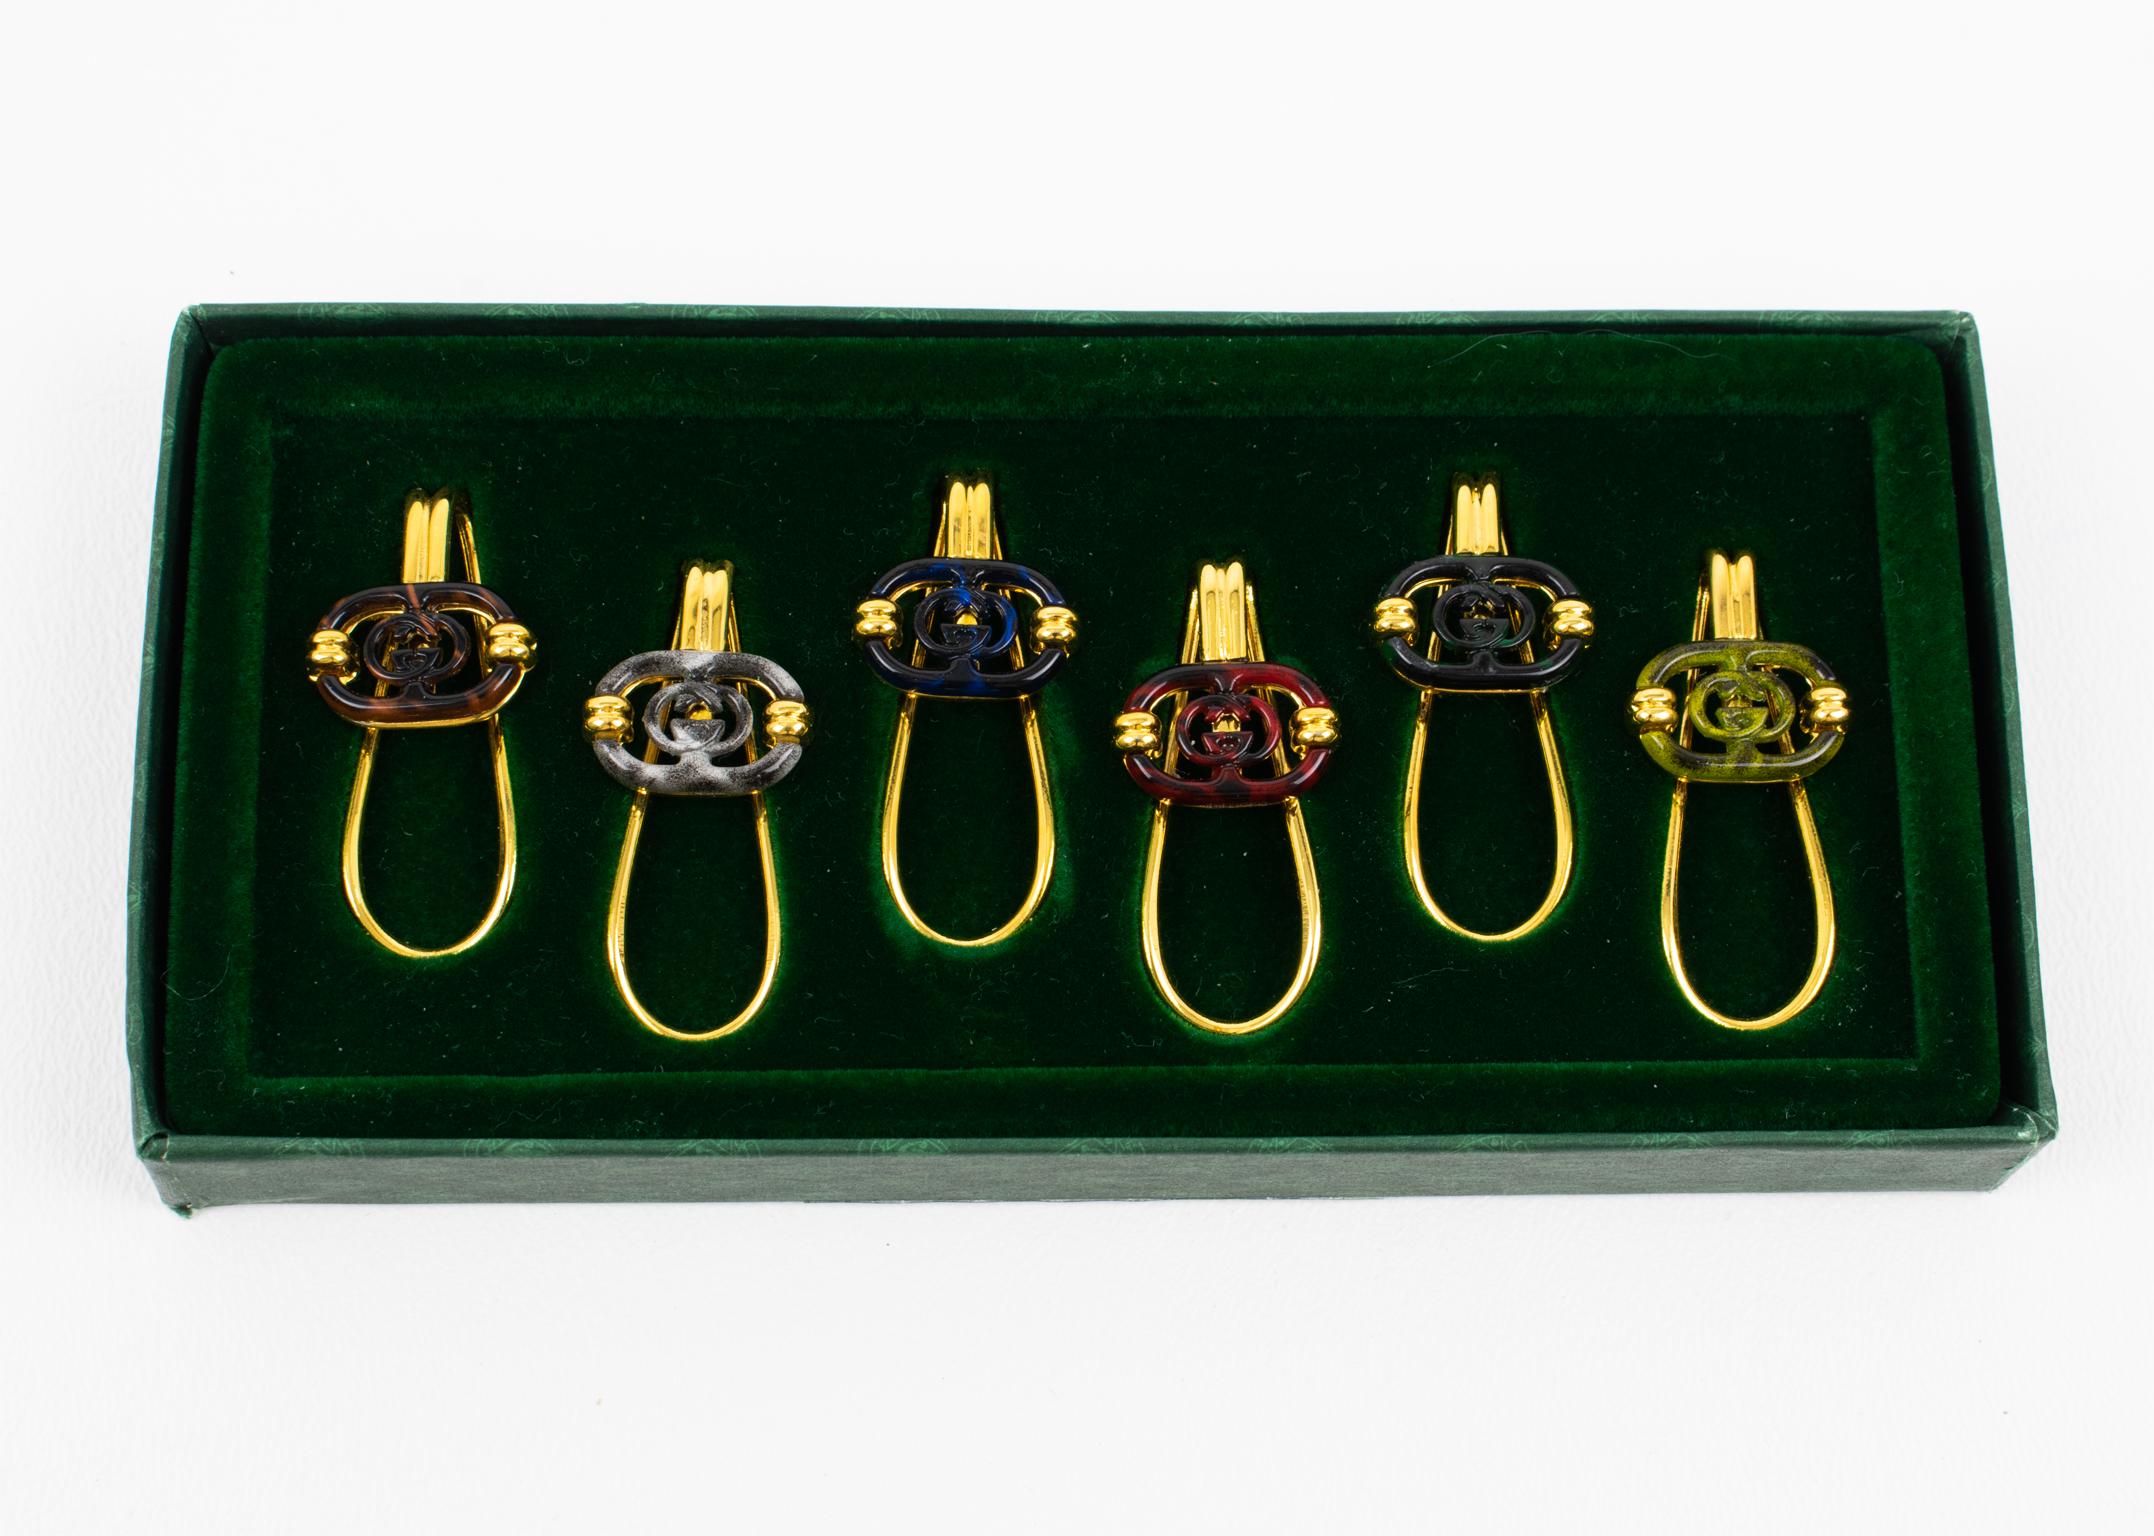 Dieses prächtige und äußerst seltene Gucci-Bargeschirr aus den 1980er Jahren mit vergoldeten und emaillierten Cocktailgläsern ist die perfekte Ergänzung für jeden Anlass. Das sechsteilige Set wird in einer originalen Präsentationsbox geliefert und